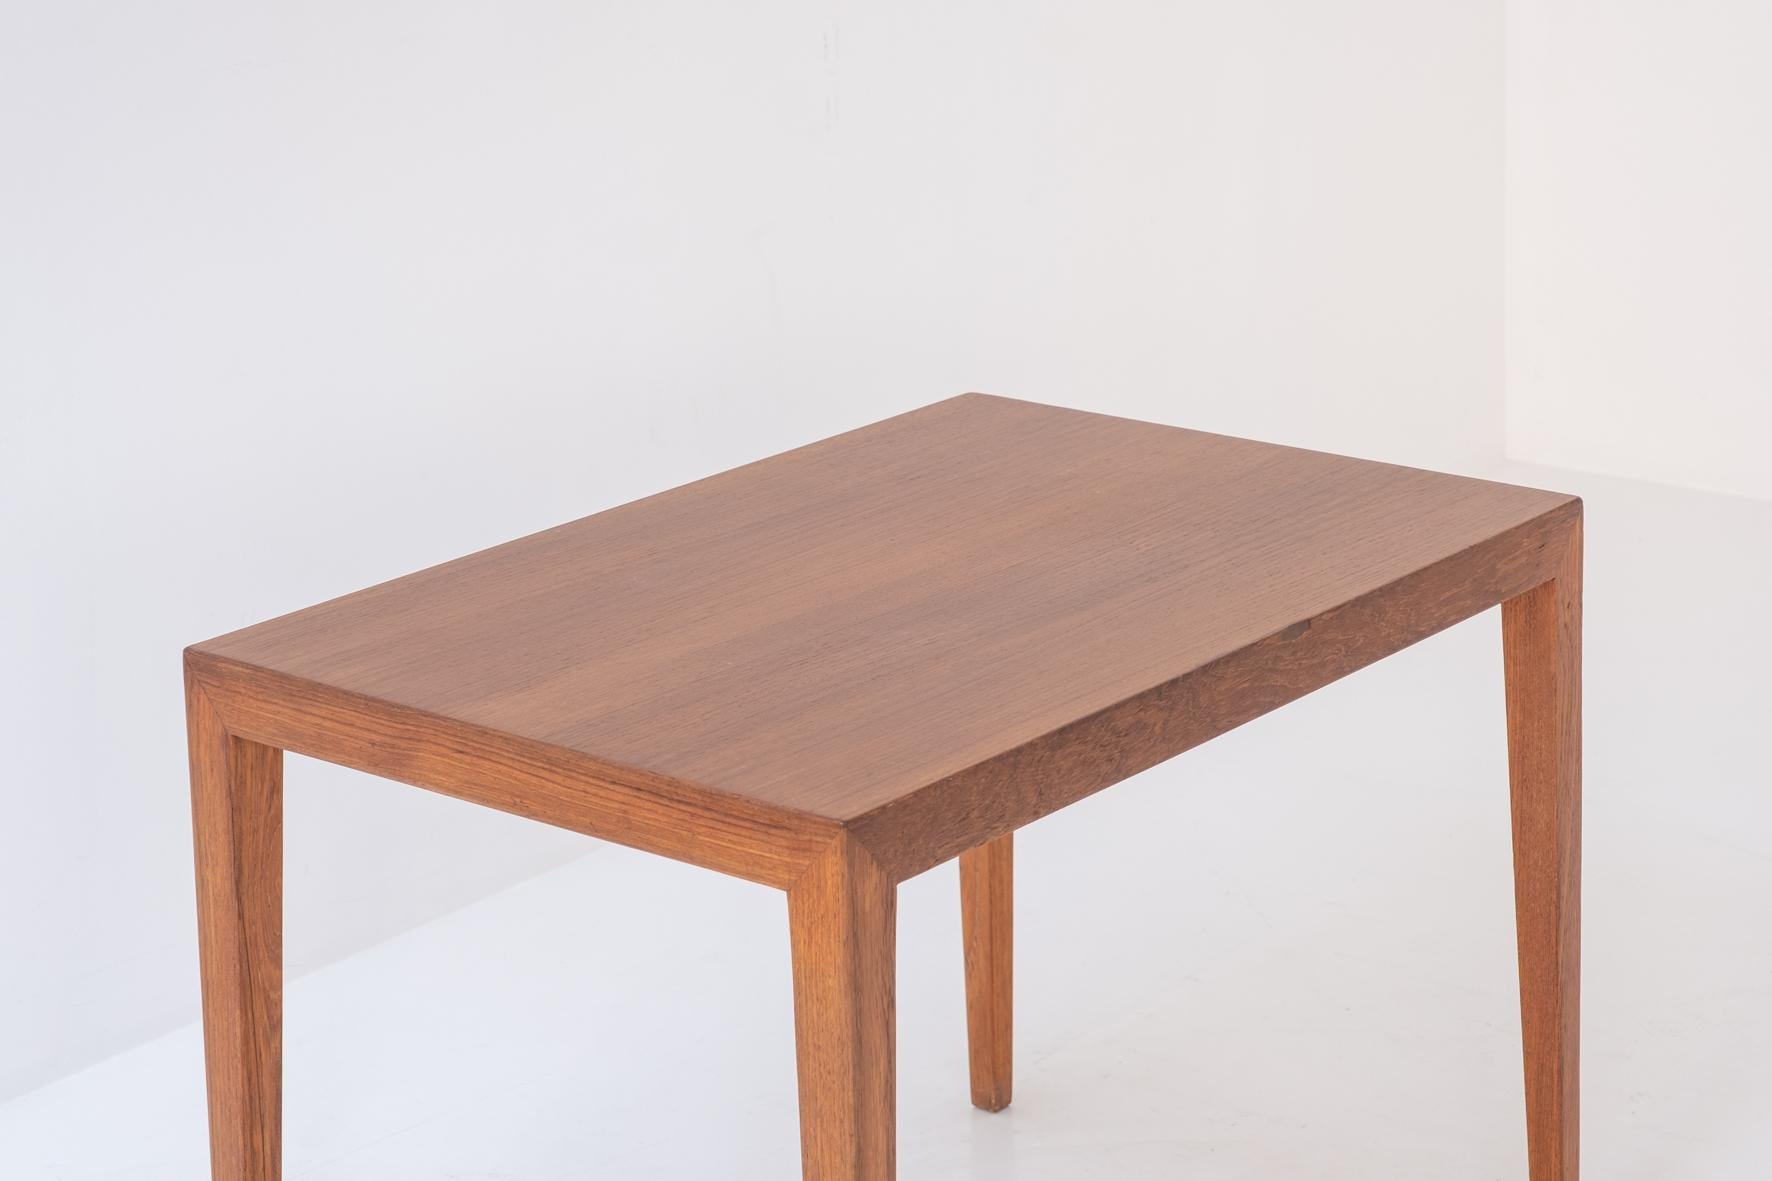 Teak Elegant side table by Severin Hansen for Haslev Møbelfabrik, Denmark 1950’s.